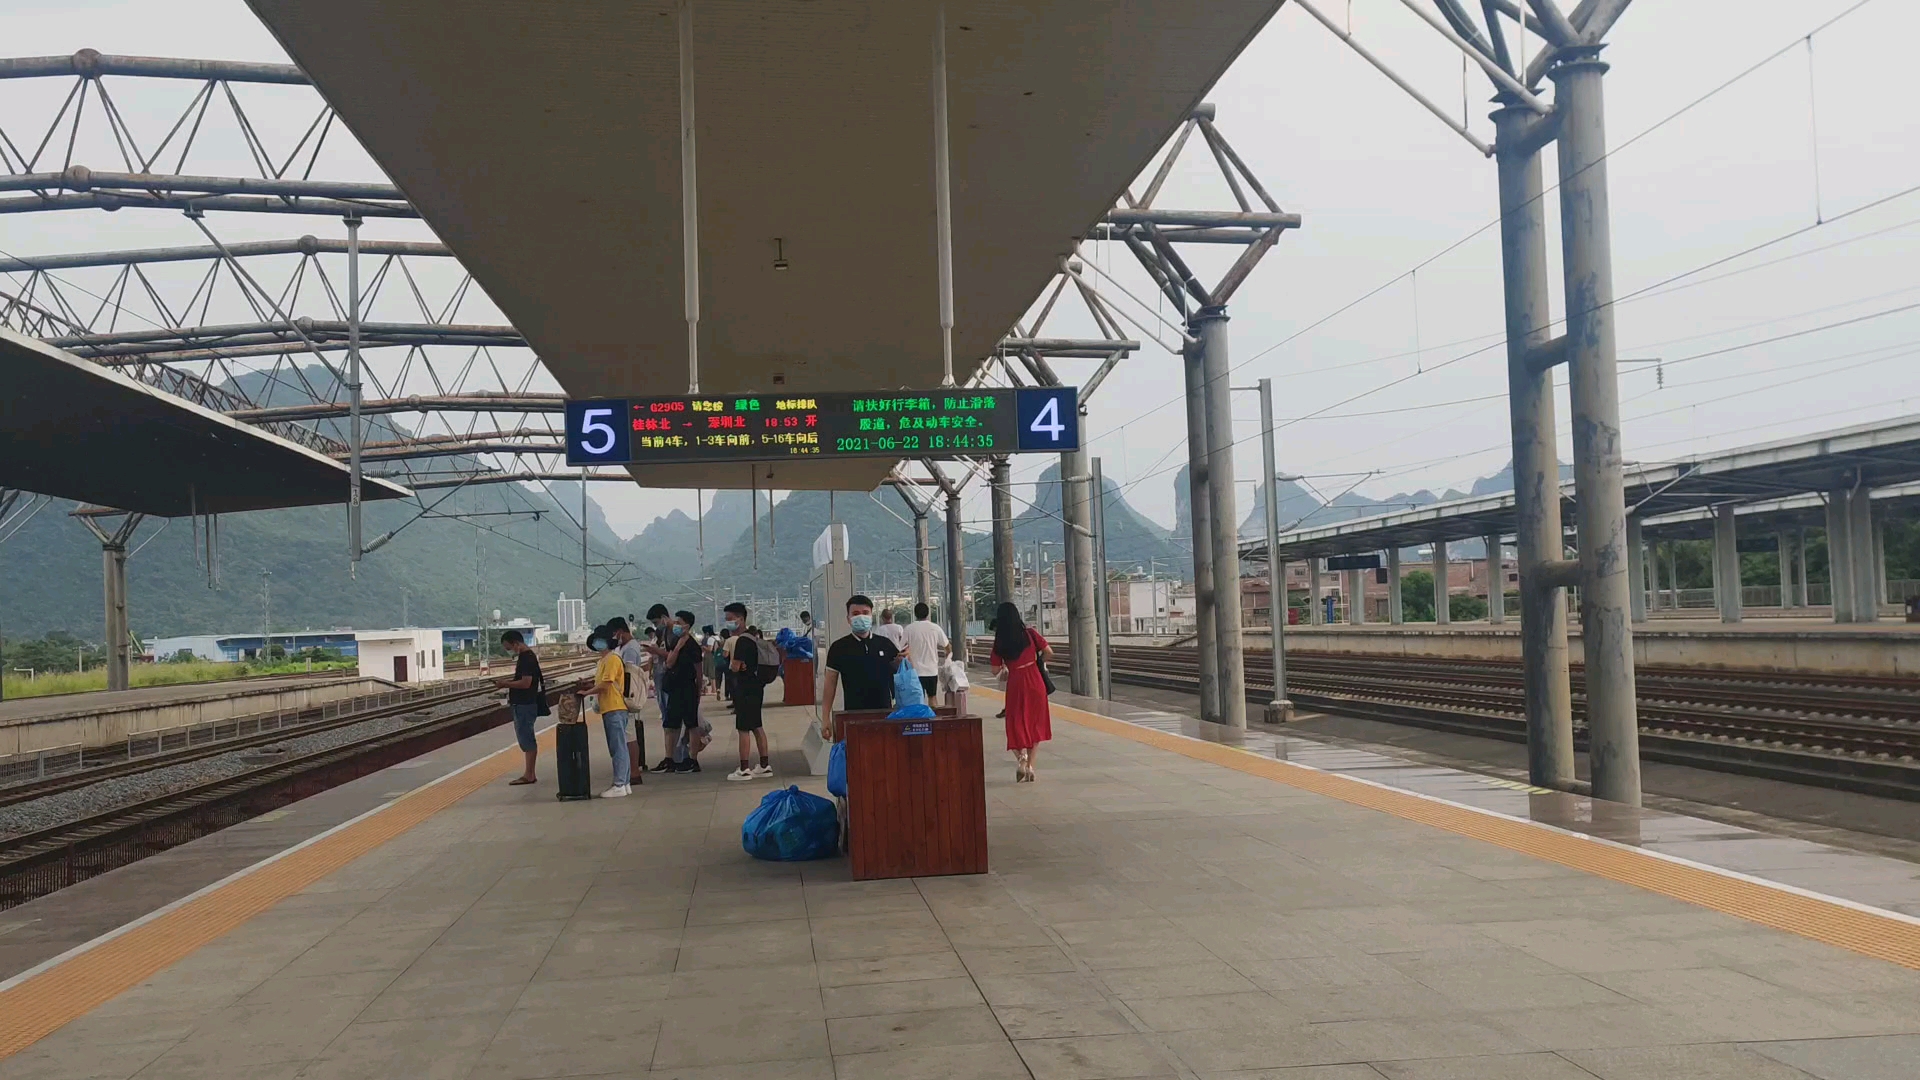 贺州老车站图片